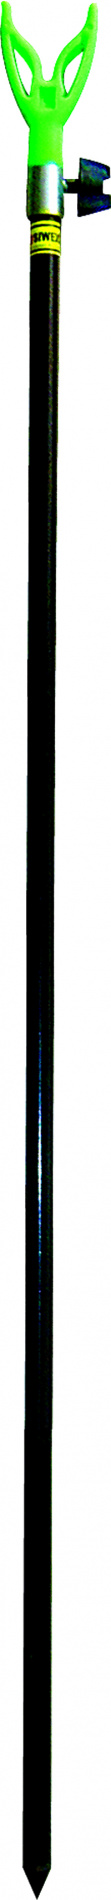 Подставка д/удочки SWD тел. V тип 2 1,2м (7410014)